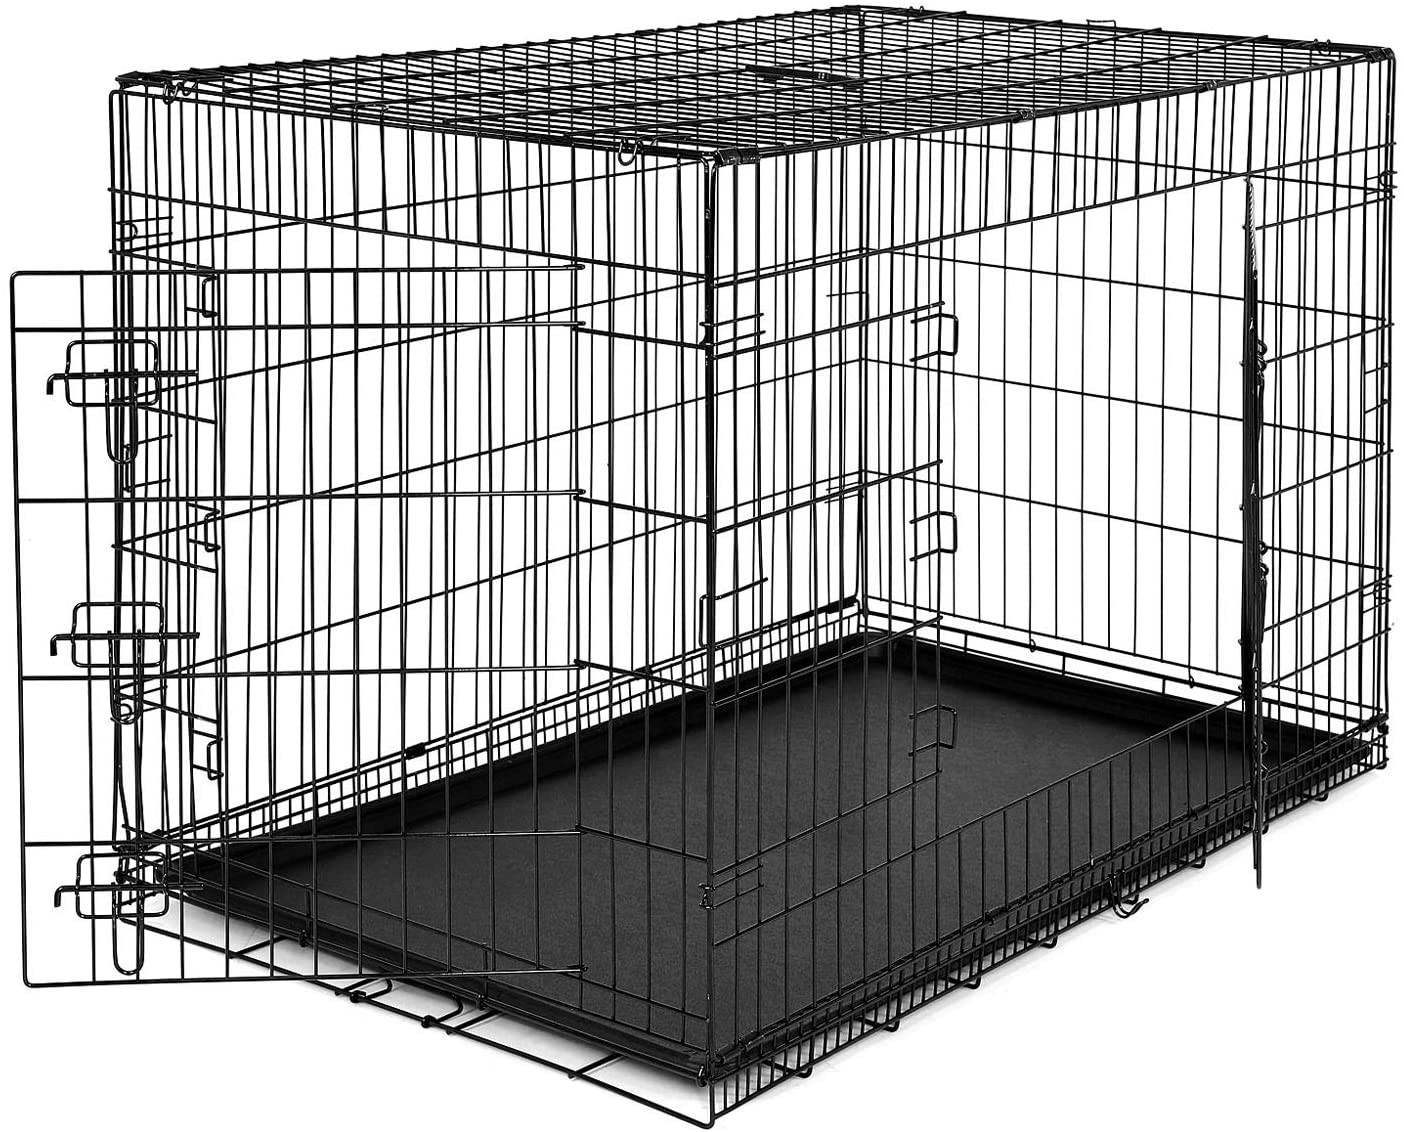  dibea DC00494, jaula de transporte para perros y animales pequeños, caja robusta hecha de alambre fuerte, plegable / con bisagras, 2 puertas, con carcasa inferior, tamaño XXL 